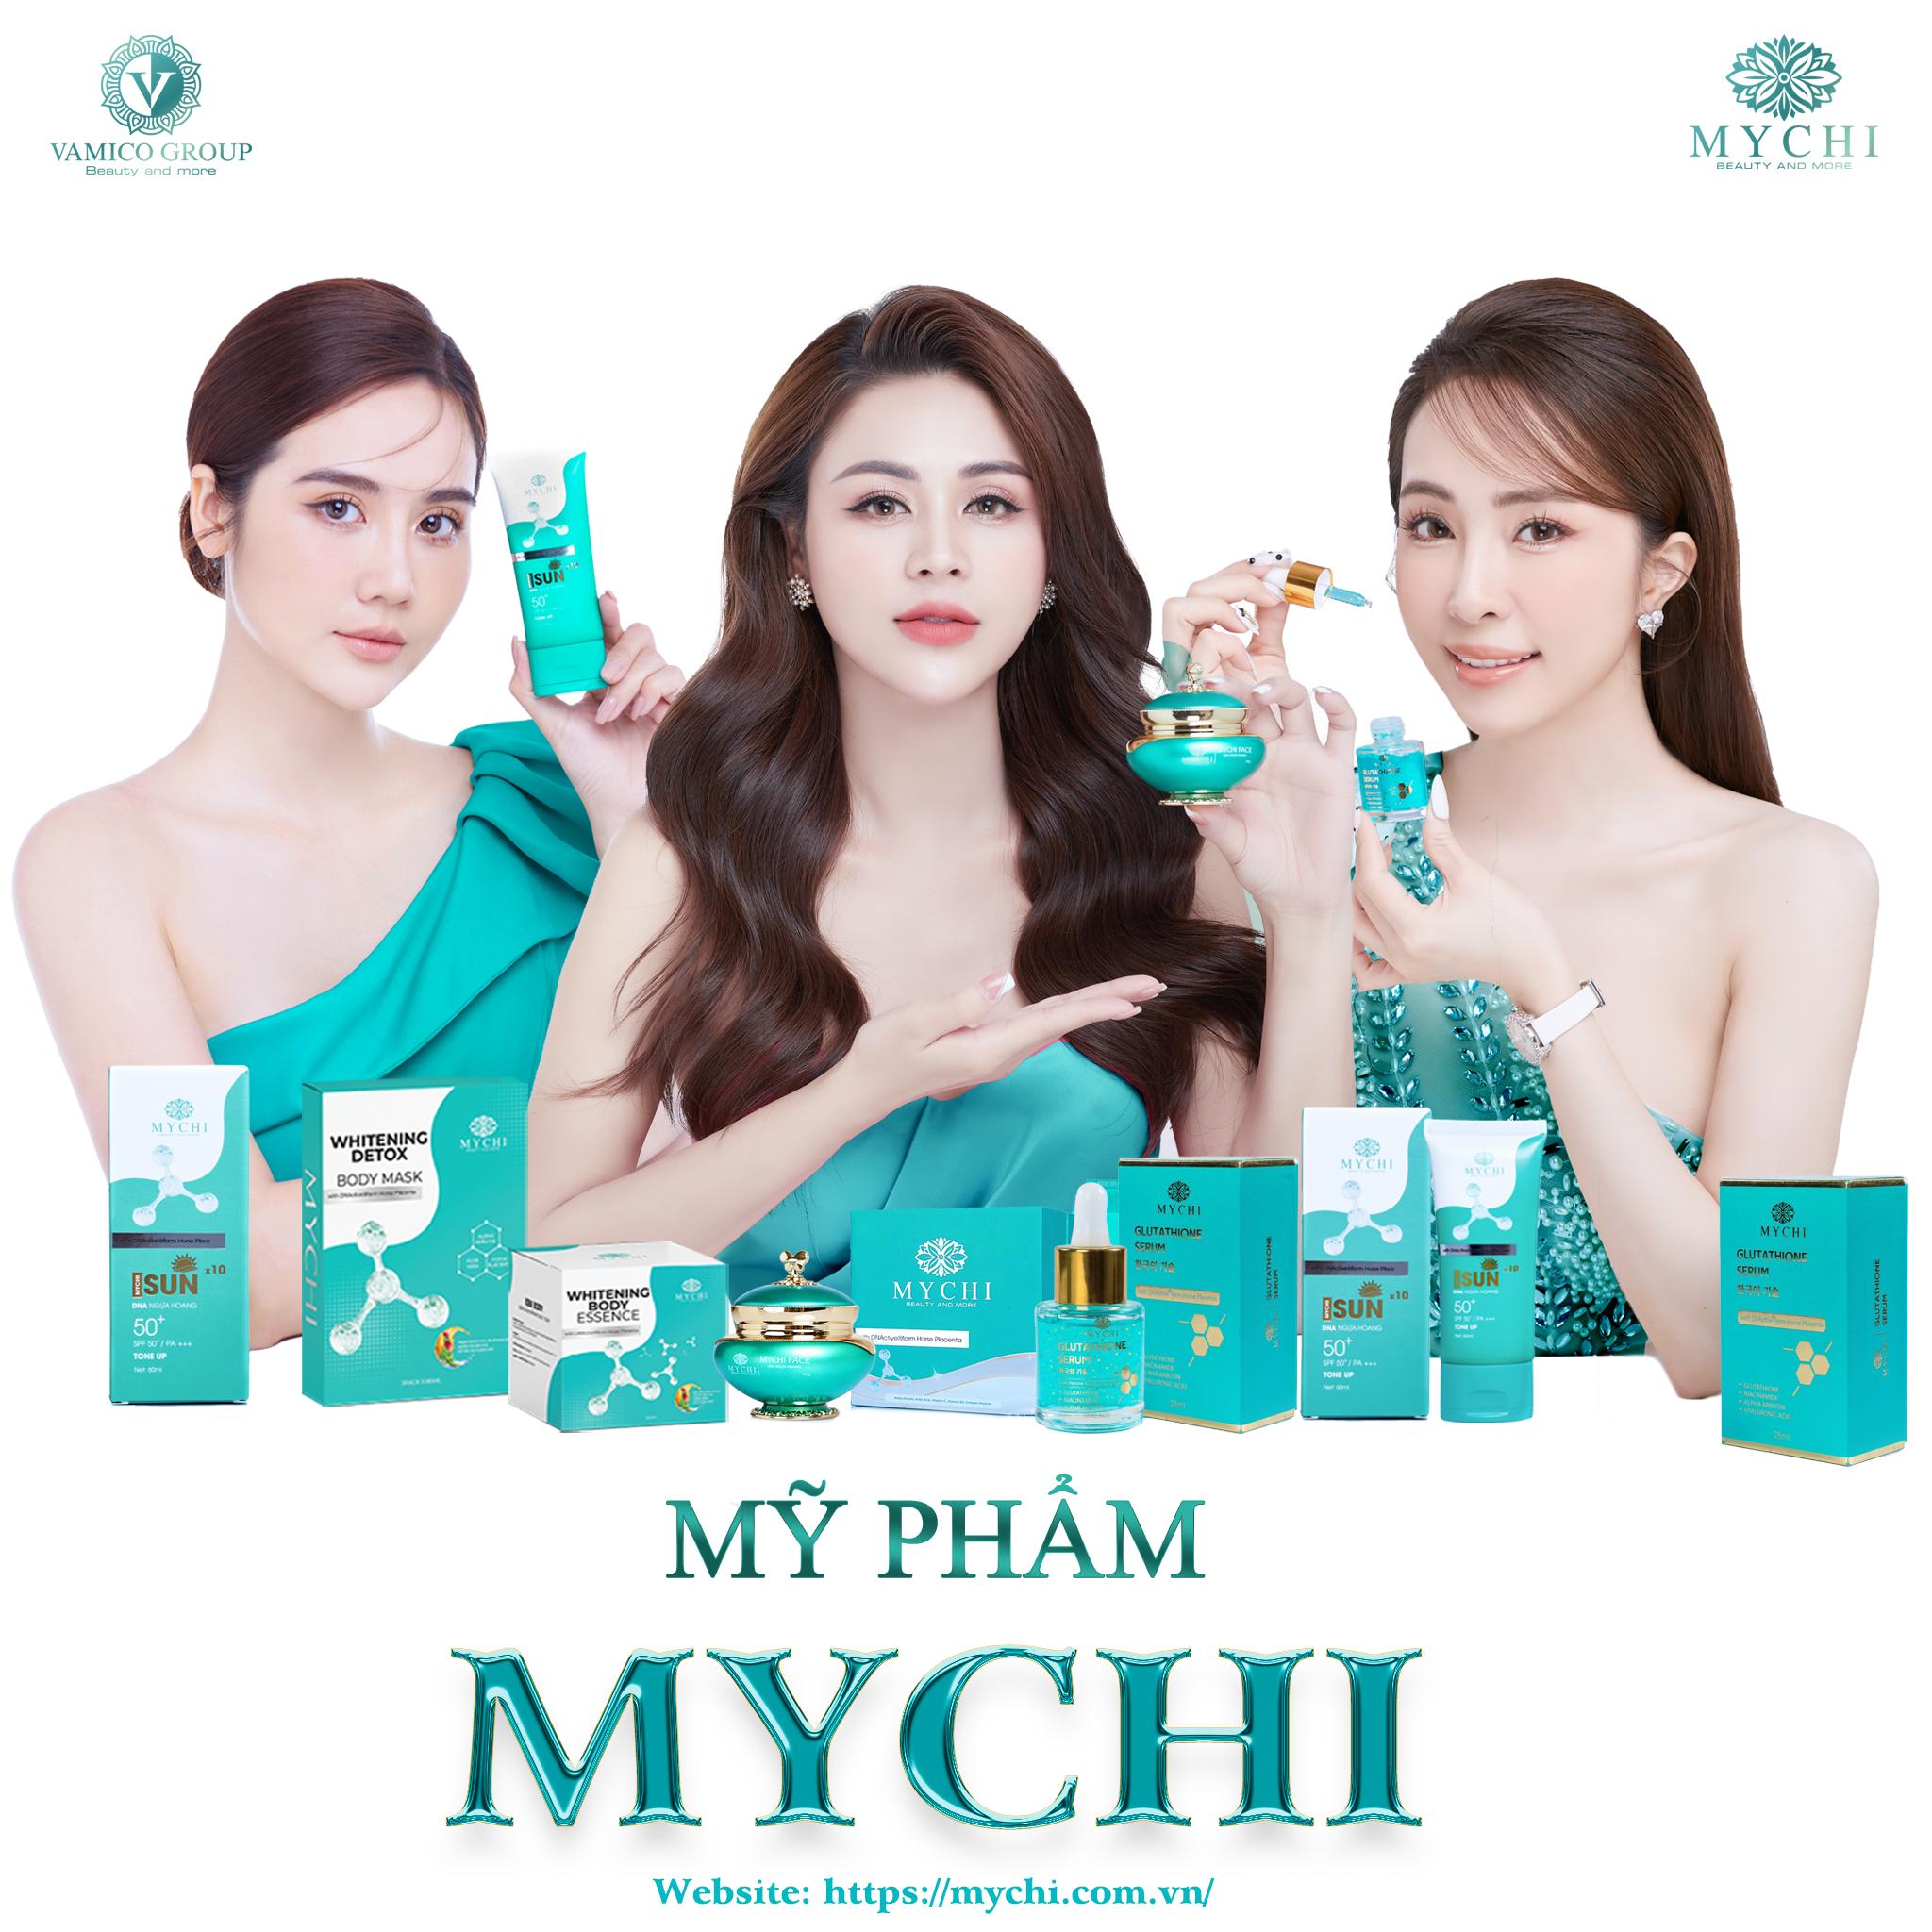 Mỹ phẩm MYCHI - Bí quyết giữ gìn sắc đẹp cho phụ nữ hiện đại - 3